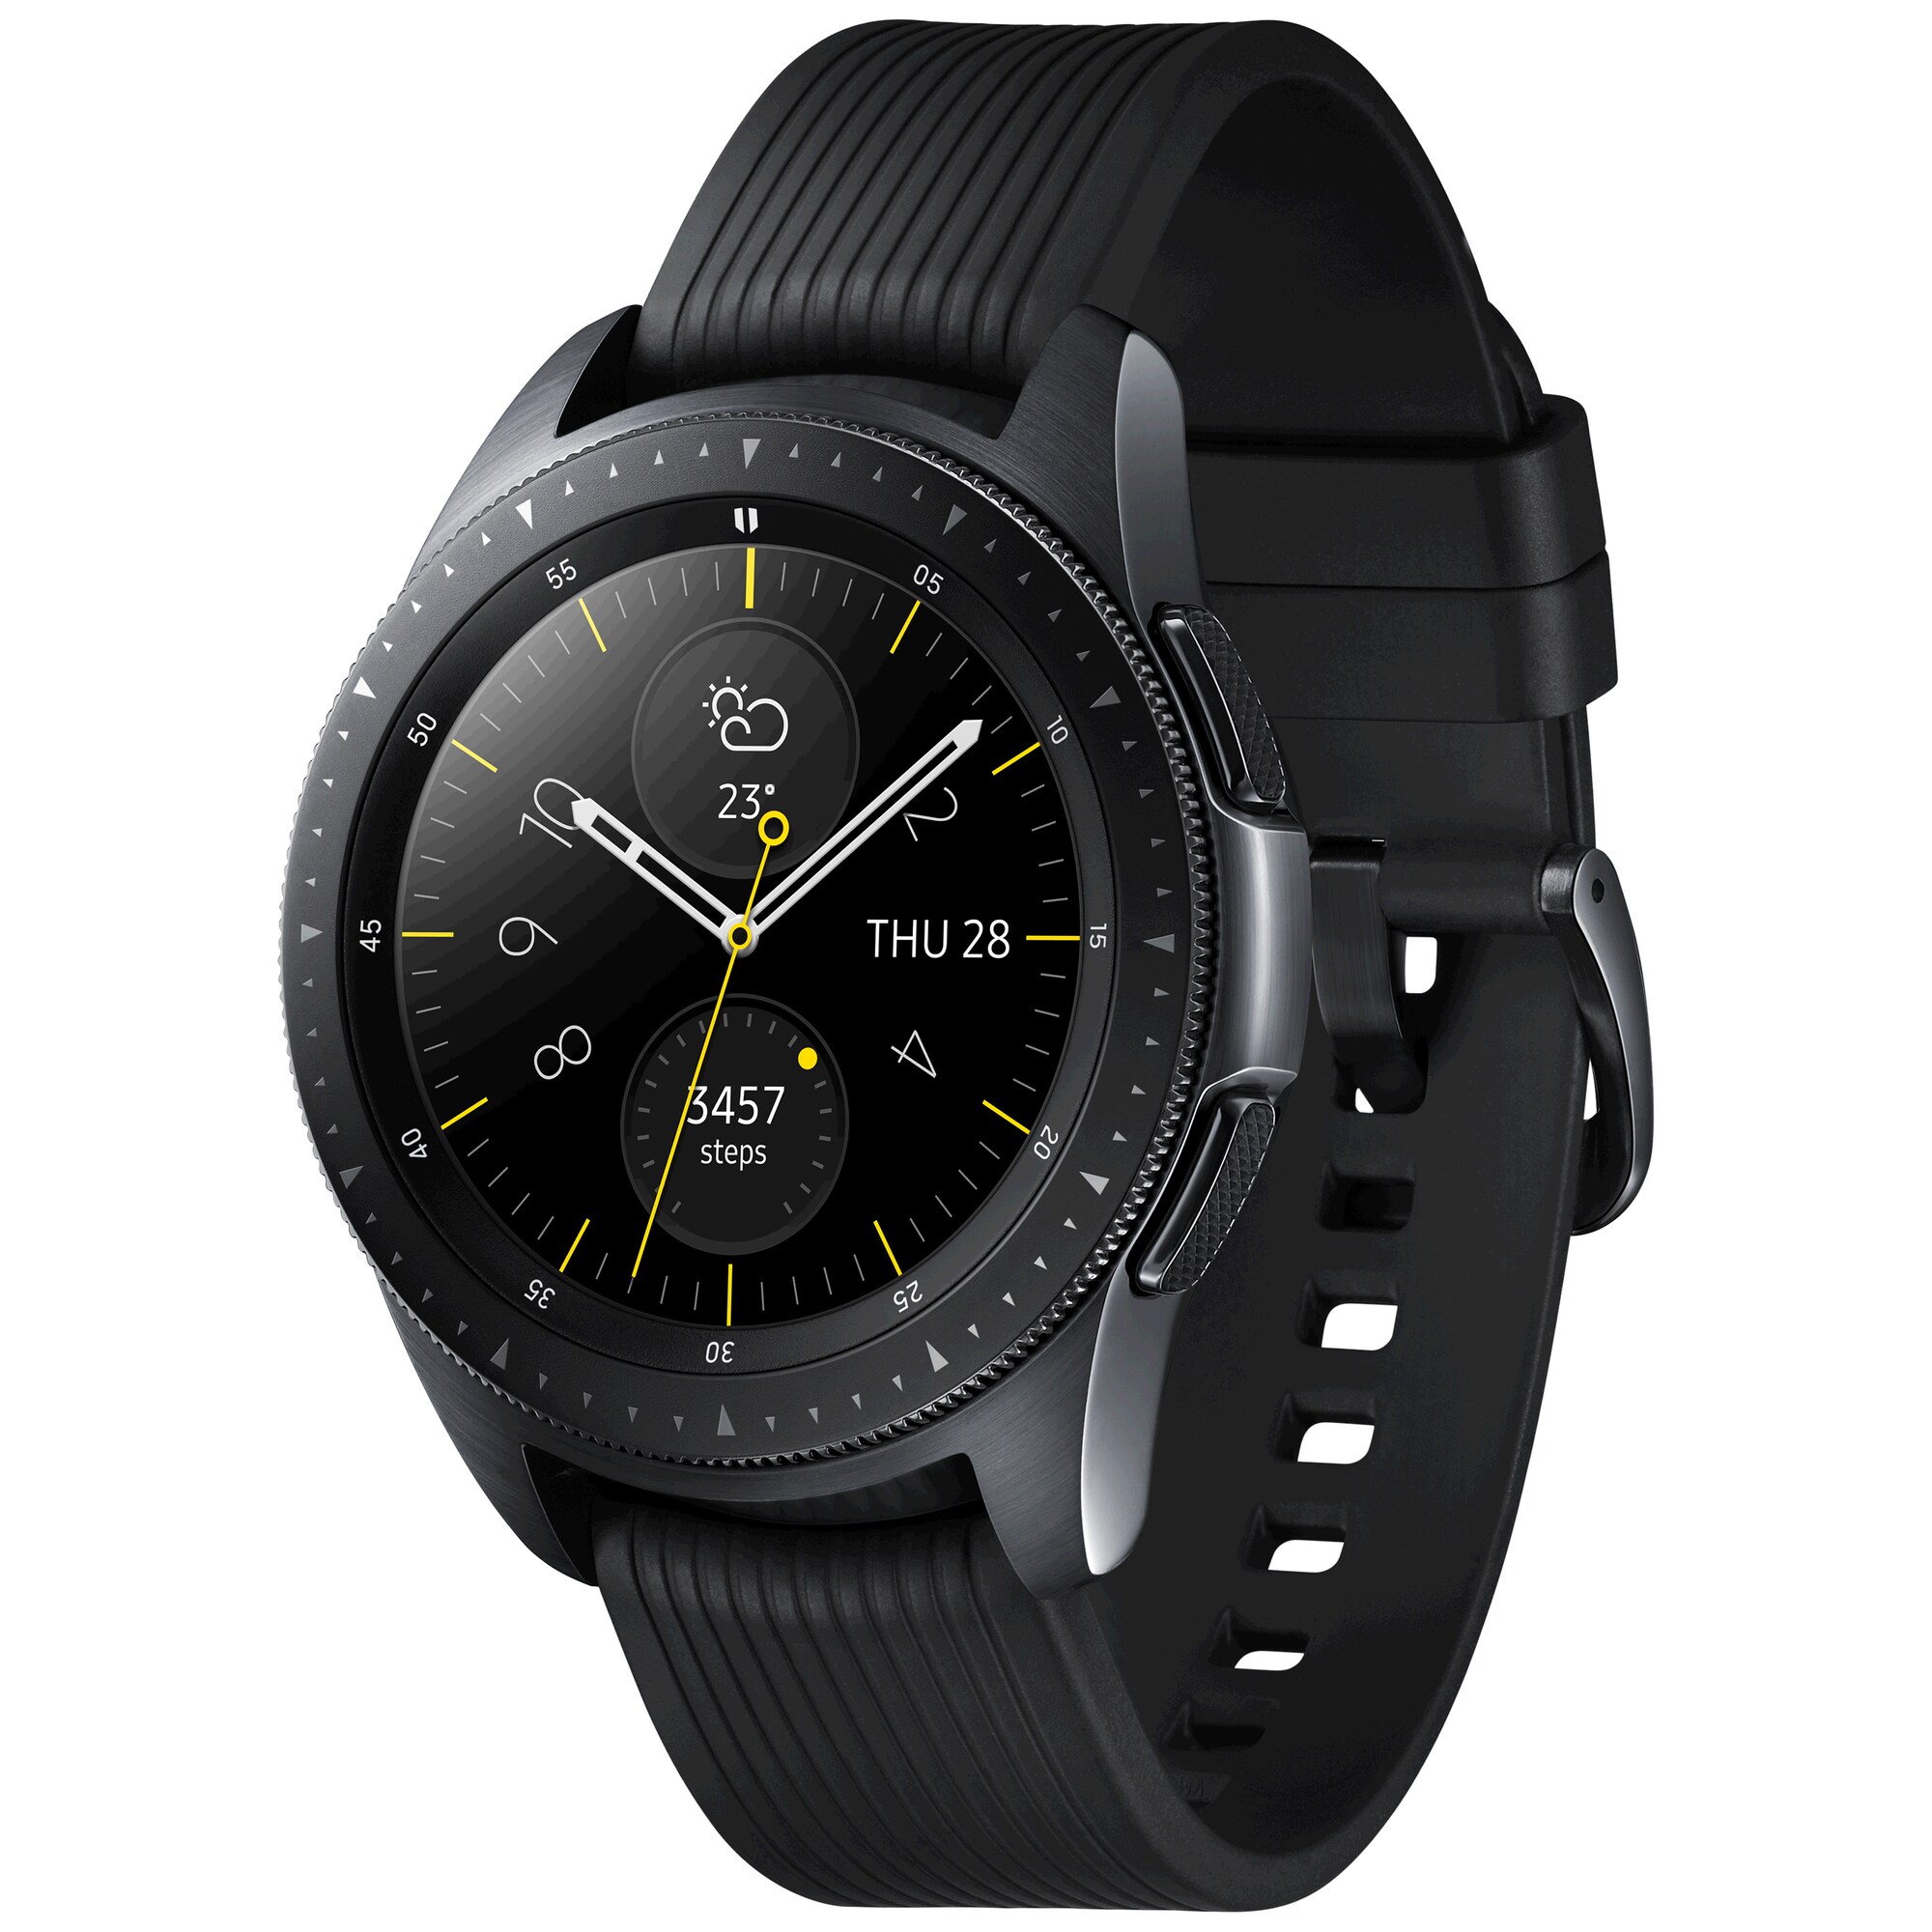 Samsung Galaxy Watch 42 mm 4G smartwatch (sort) - Smartwatch ...